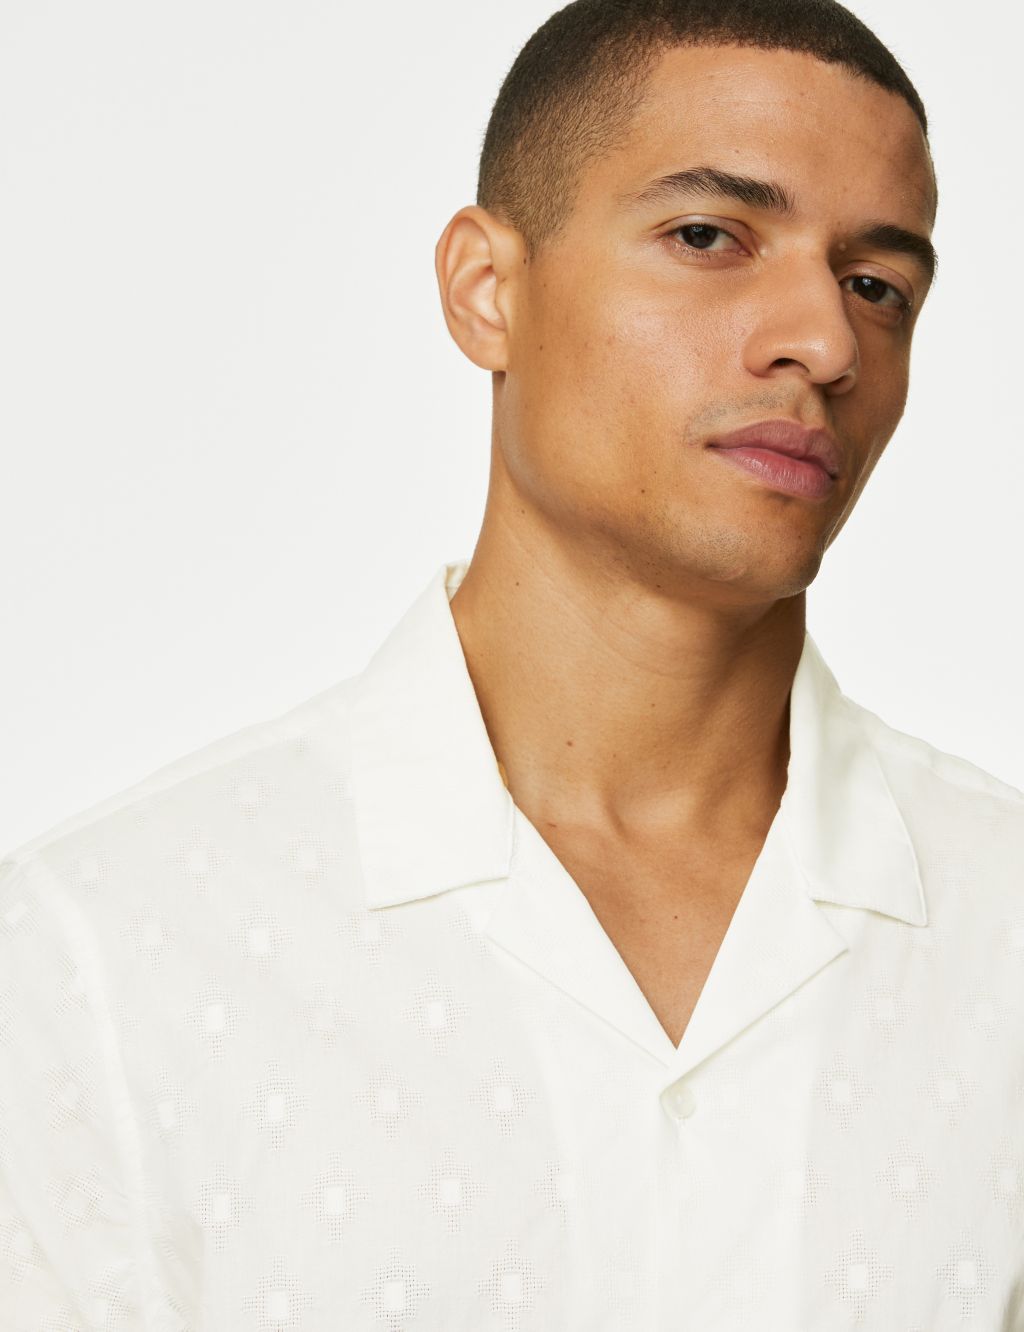 Pure Cotton Textured Cuban Collar Shirt